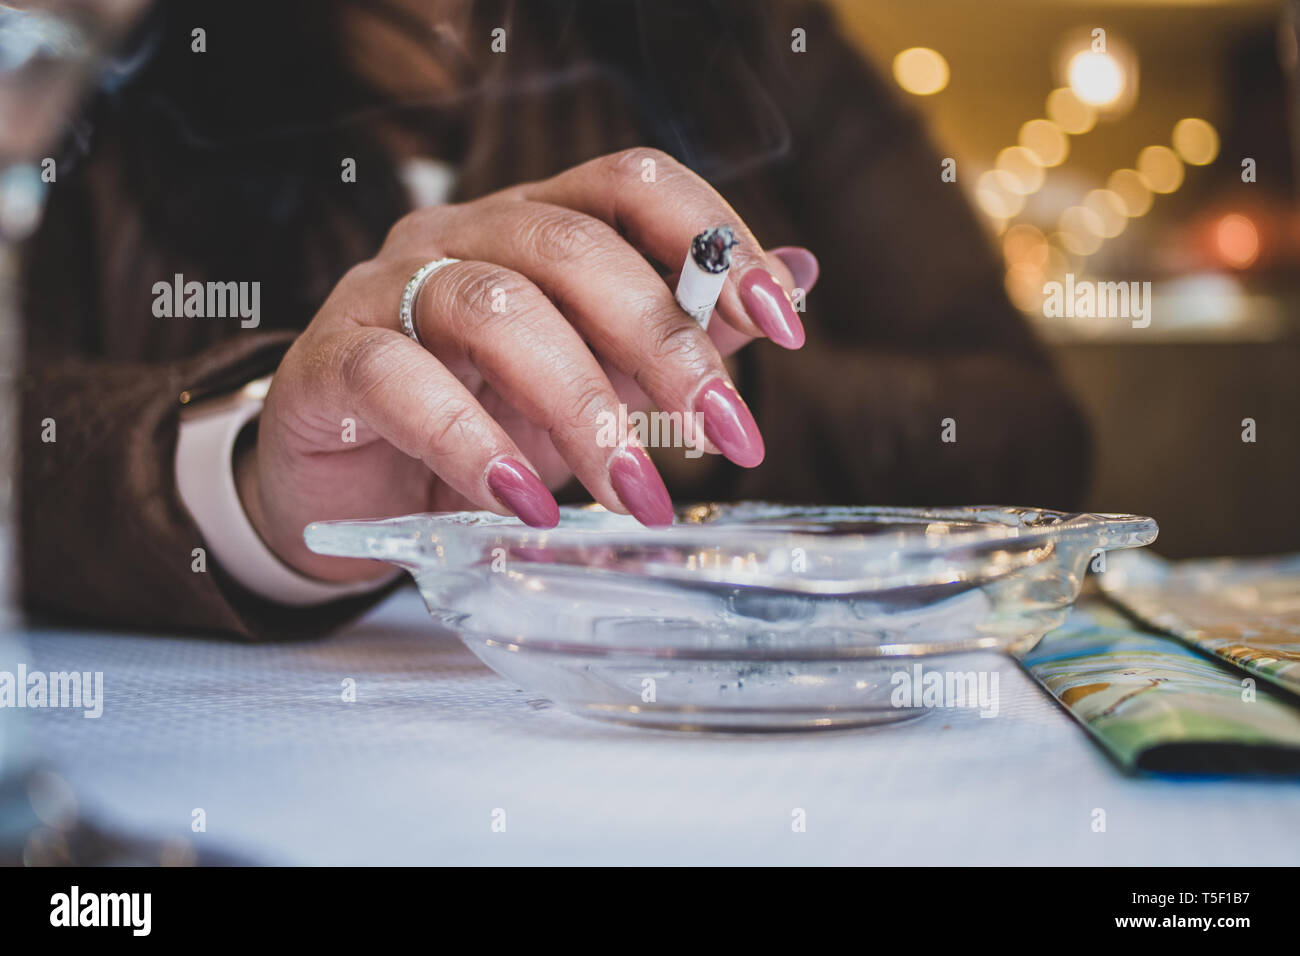 Origine asiatica donna con unghie verniciate, tenendo in mano una sigaretta su un posacenere in un bar. Foto Stock